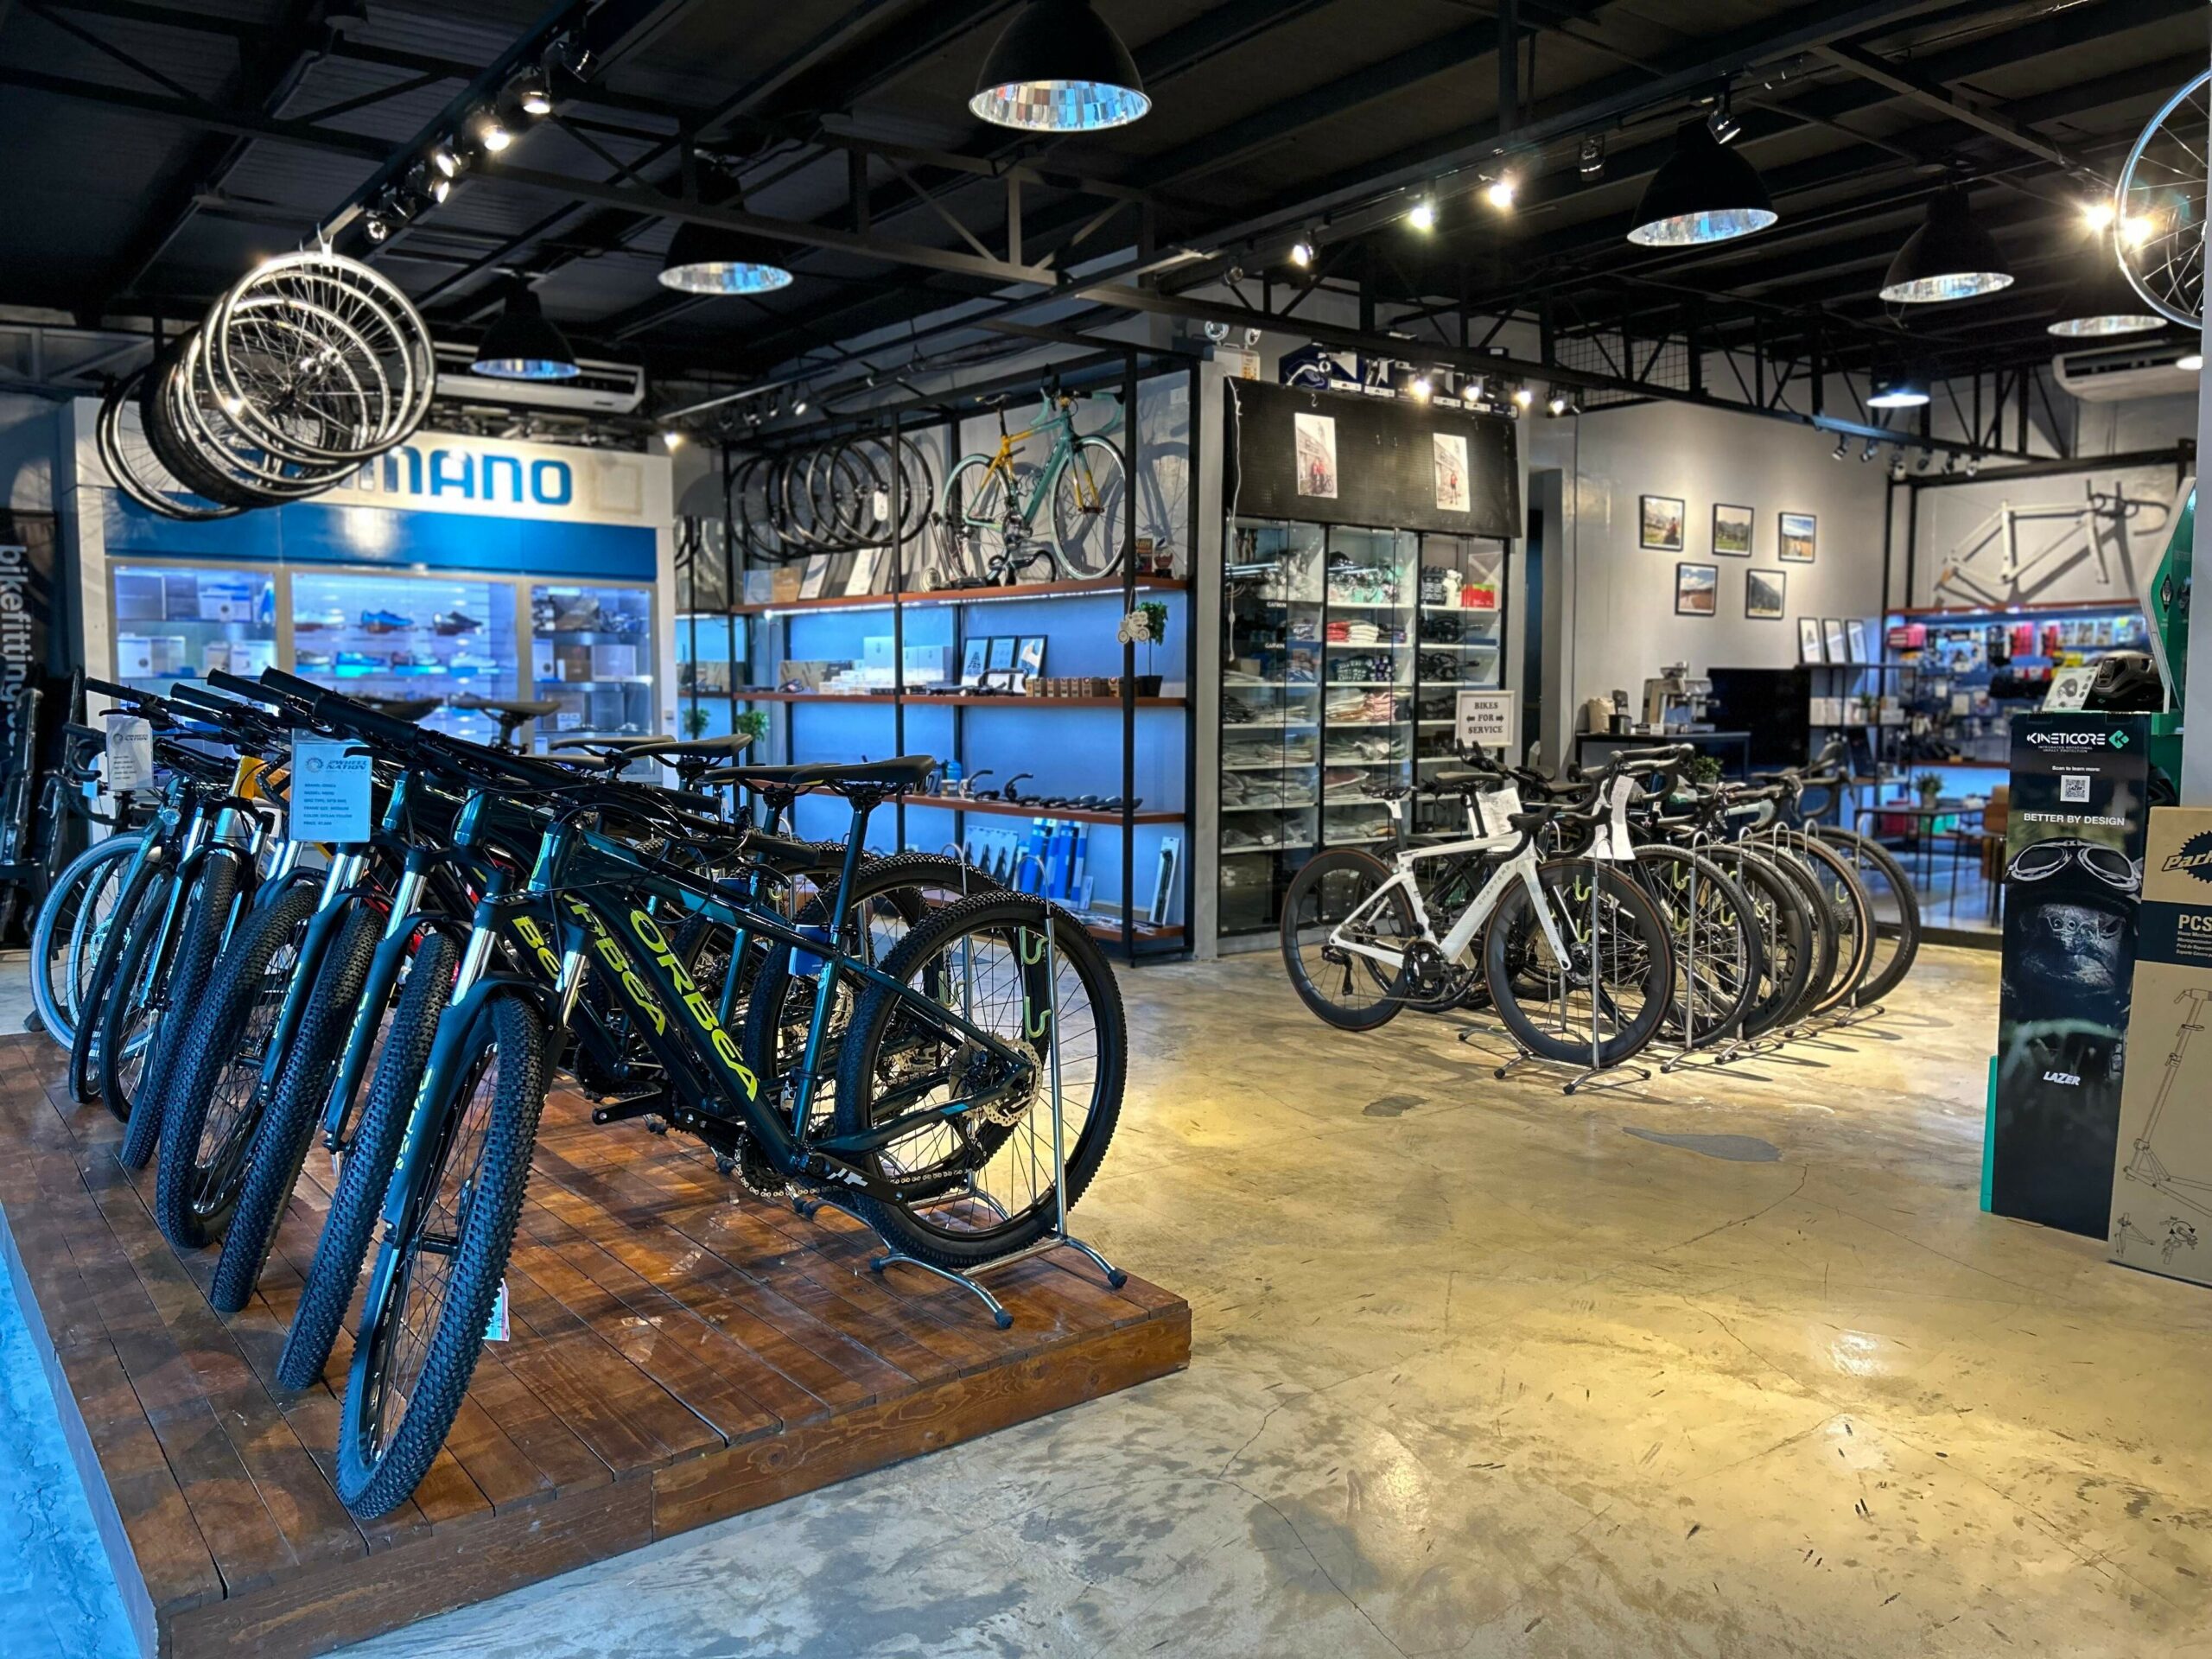 bike shops metro manila - 2wheel nation cycling